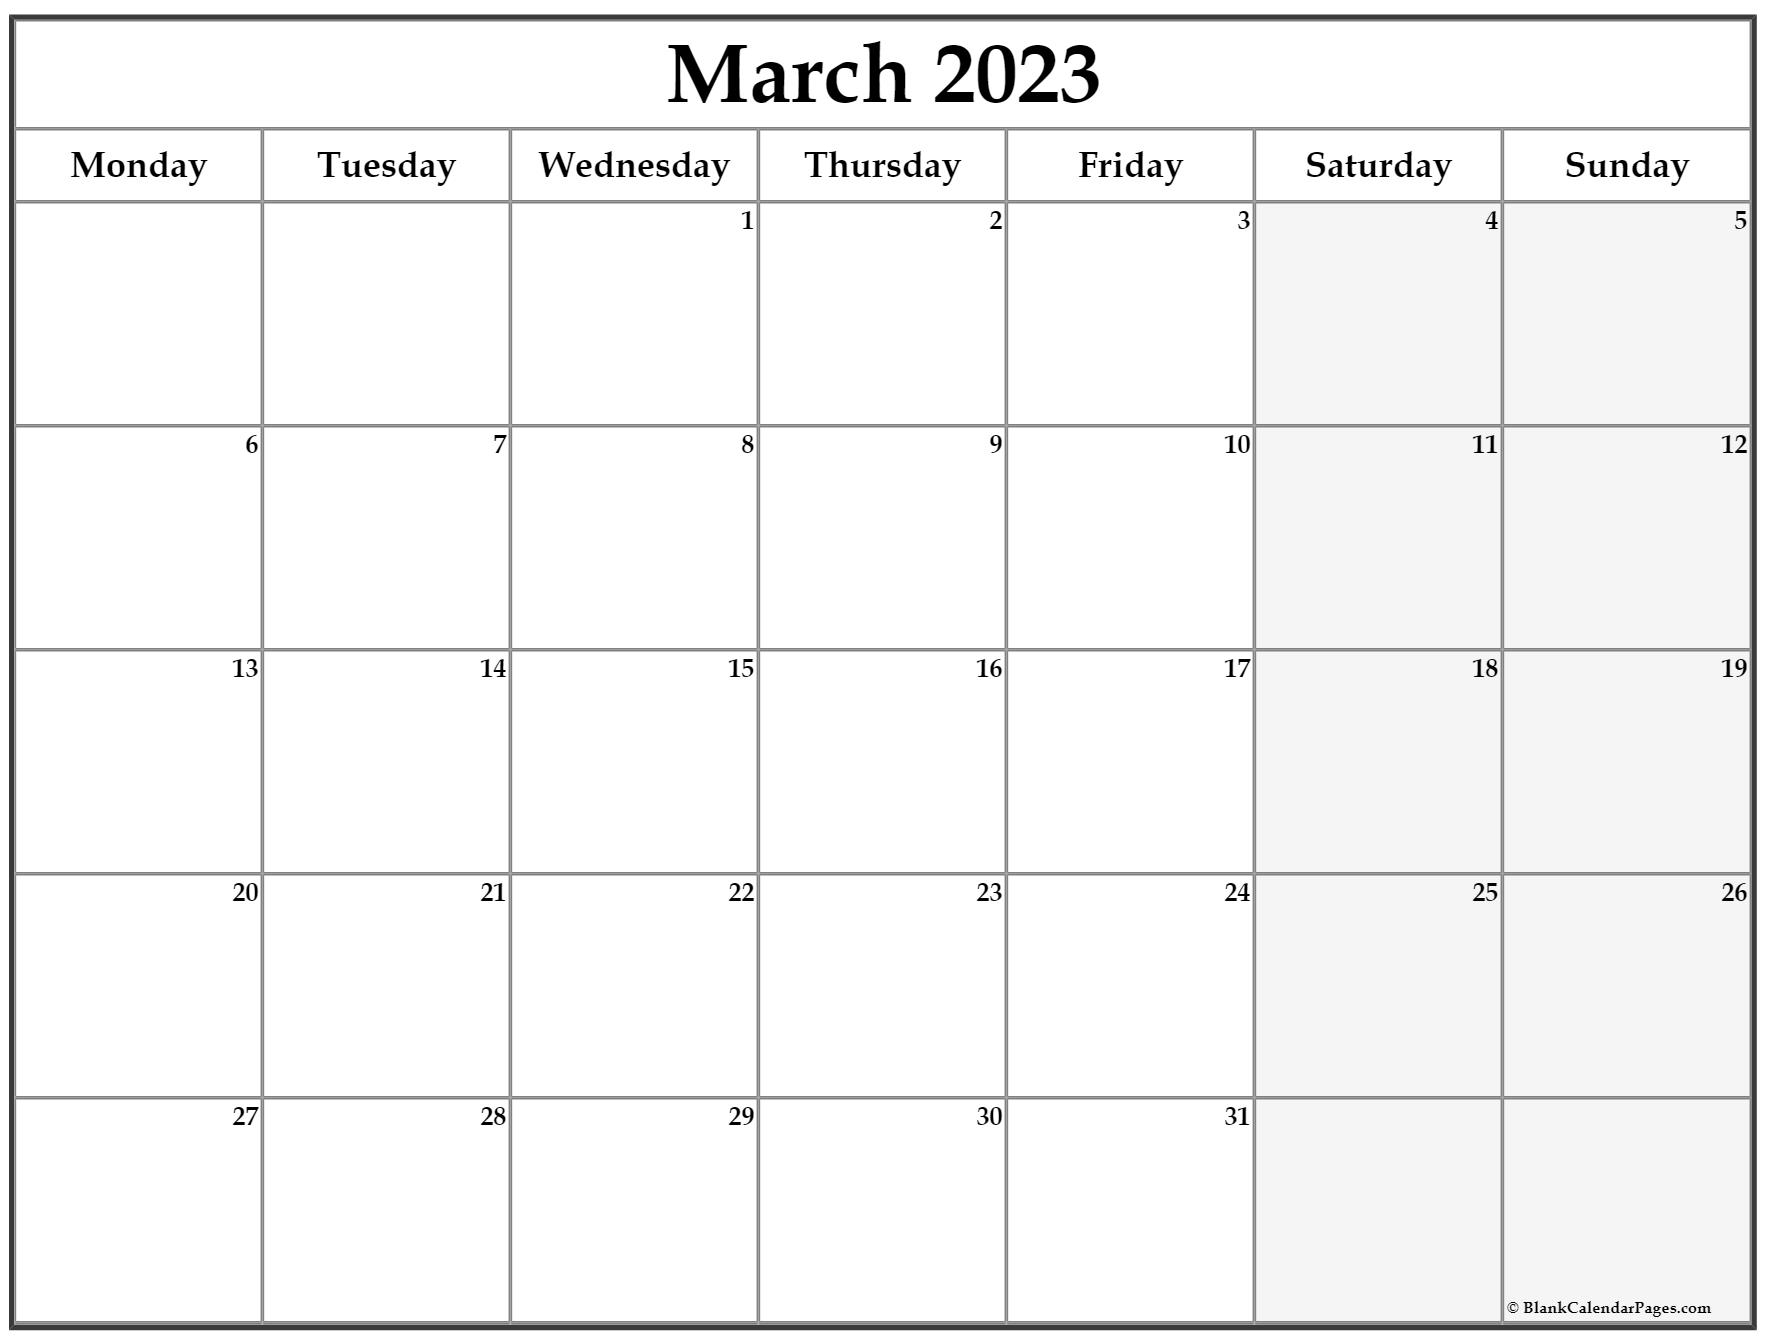 March 2023 Monday Calendar | Monday To Sunday throughout March 2023 Calendar Printable